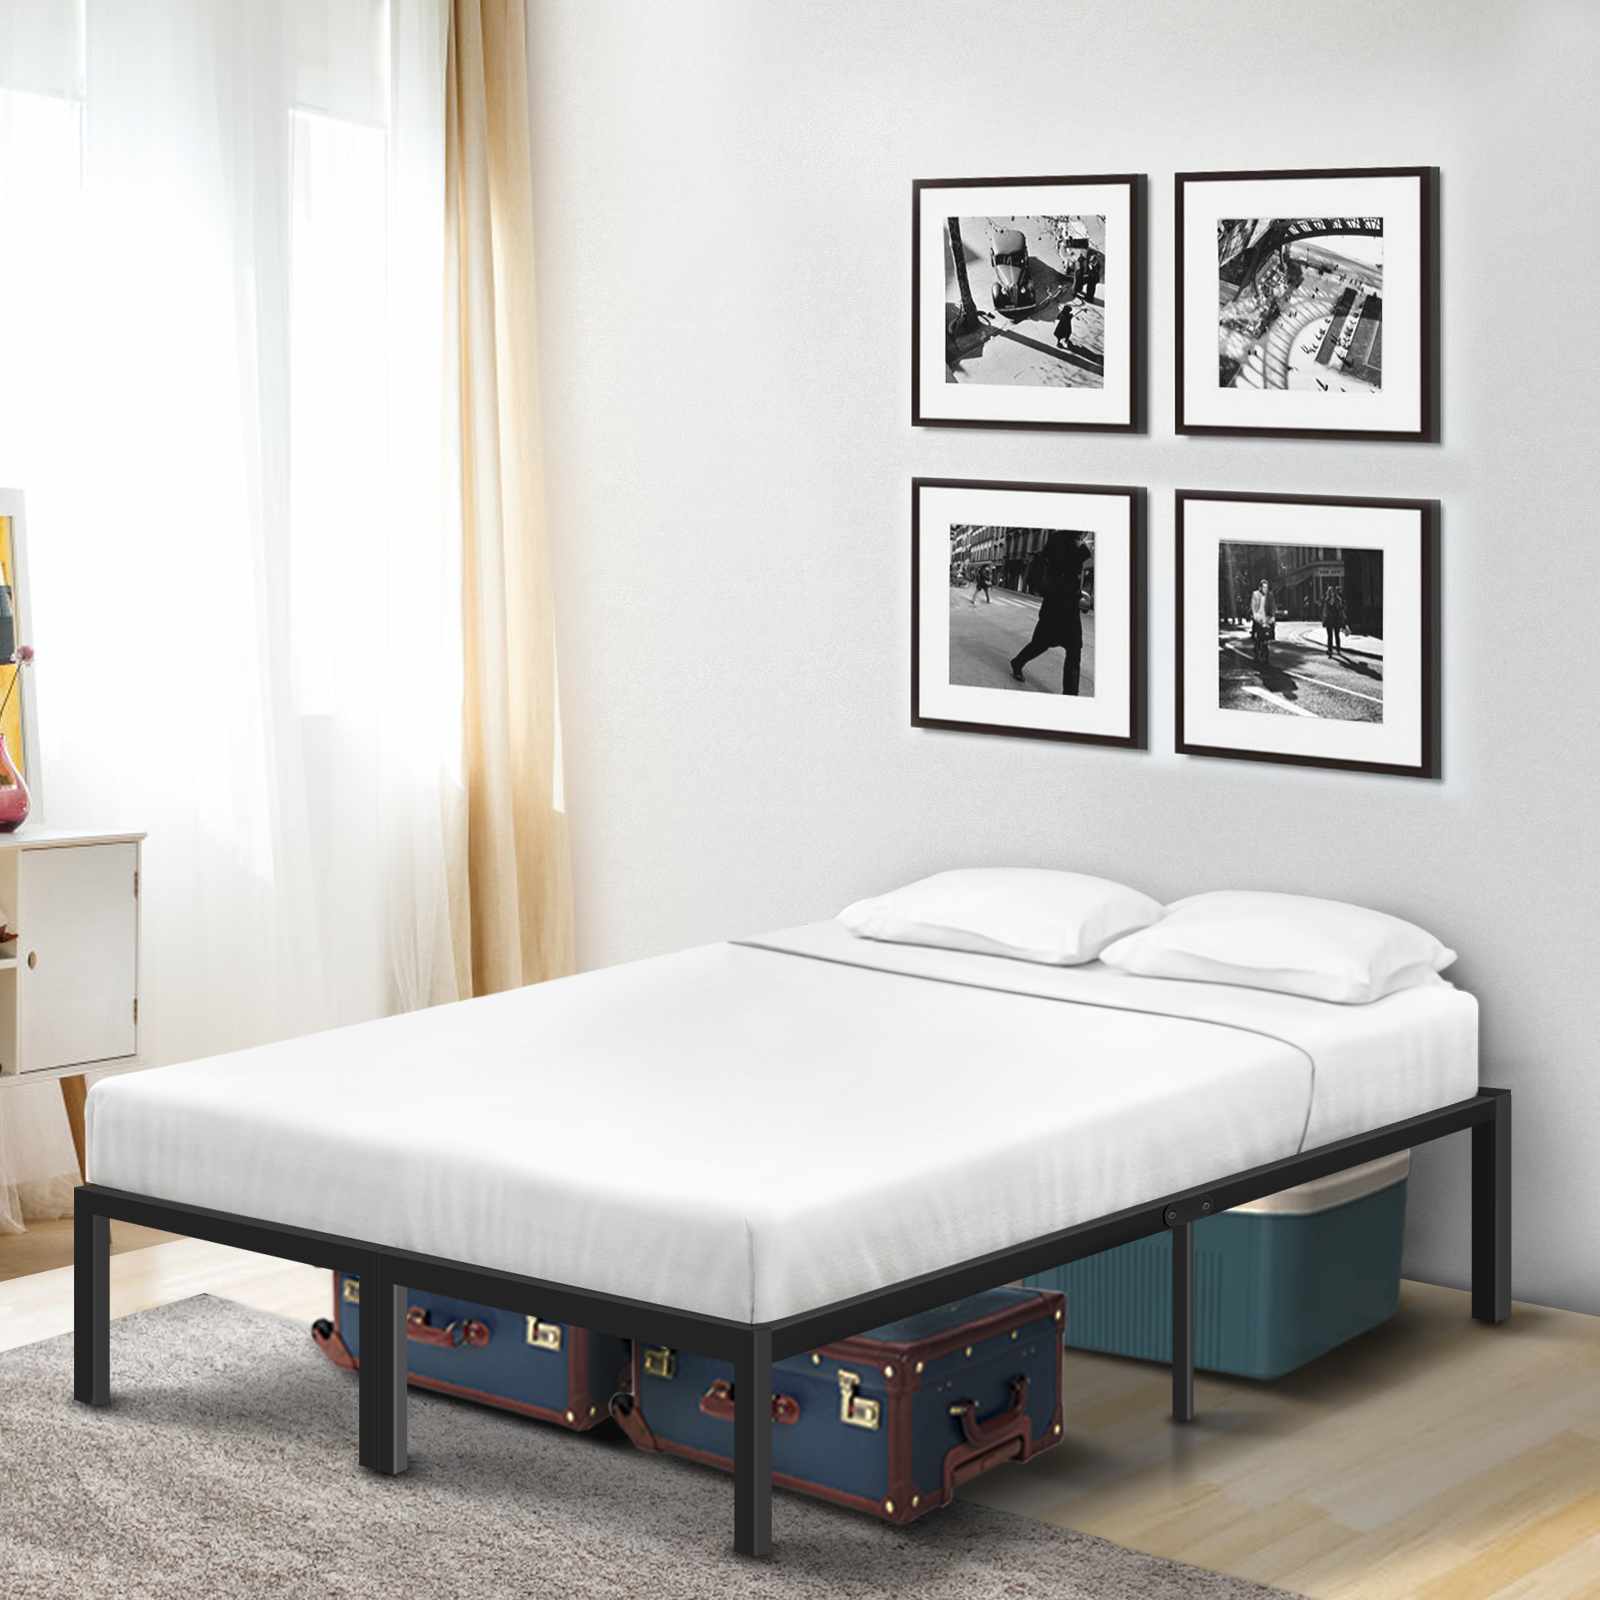 Slat Base Double Bed Frame For Bedroom